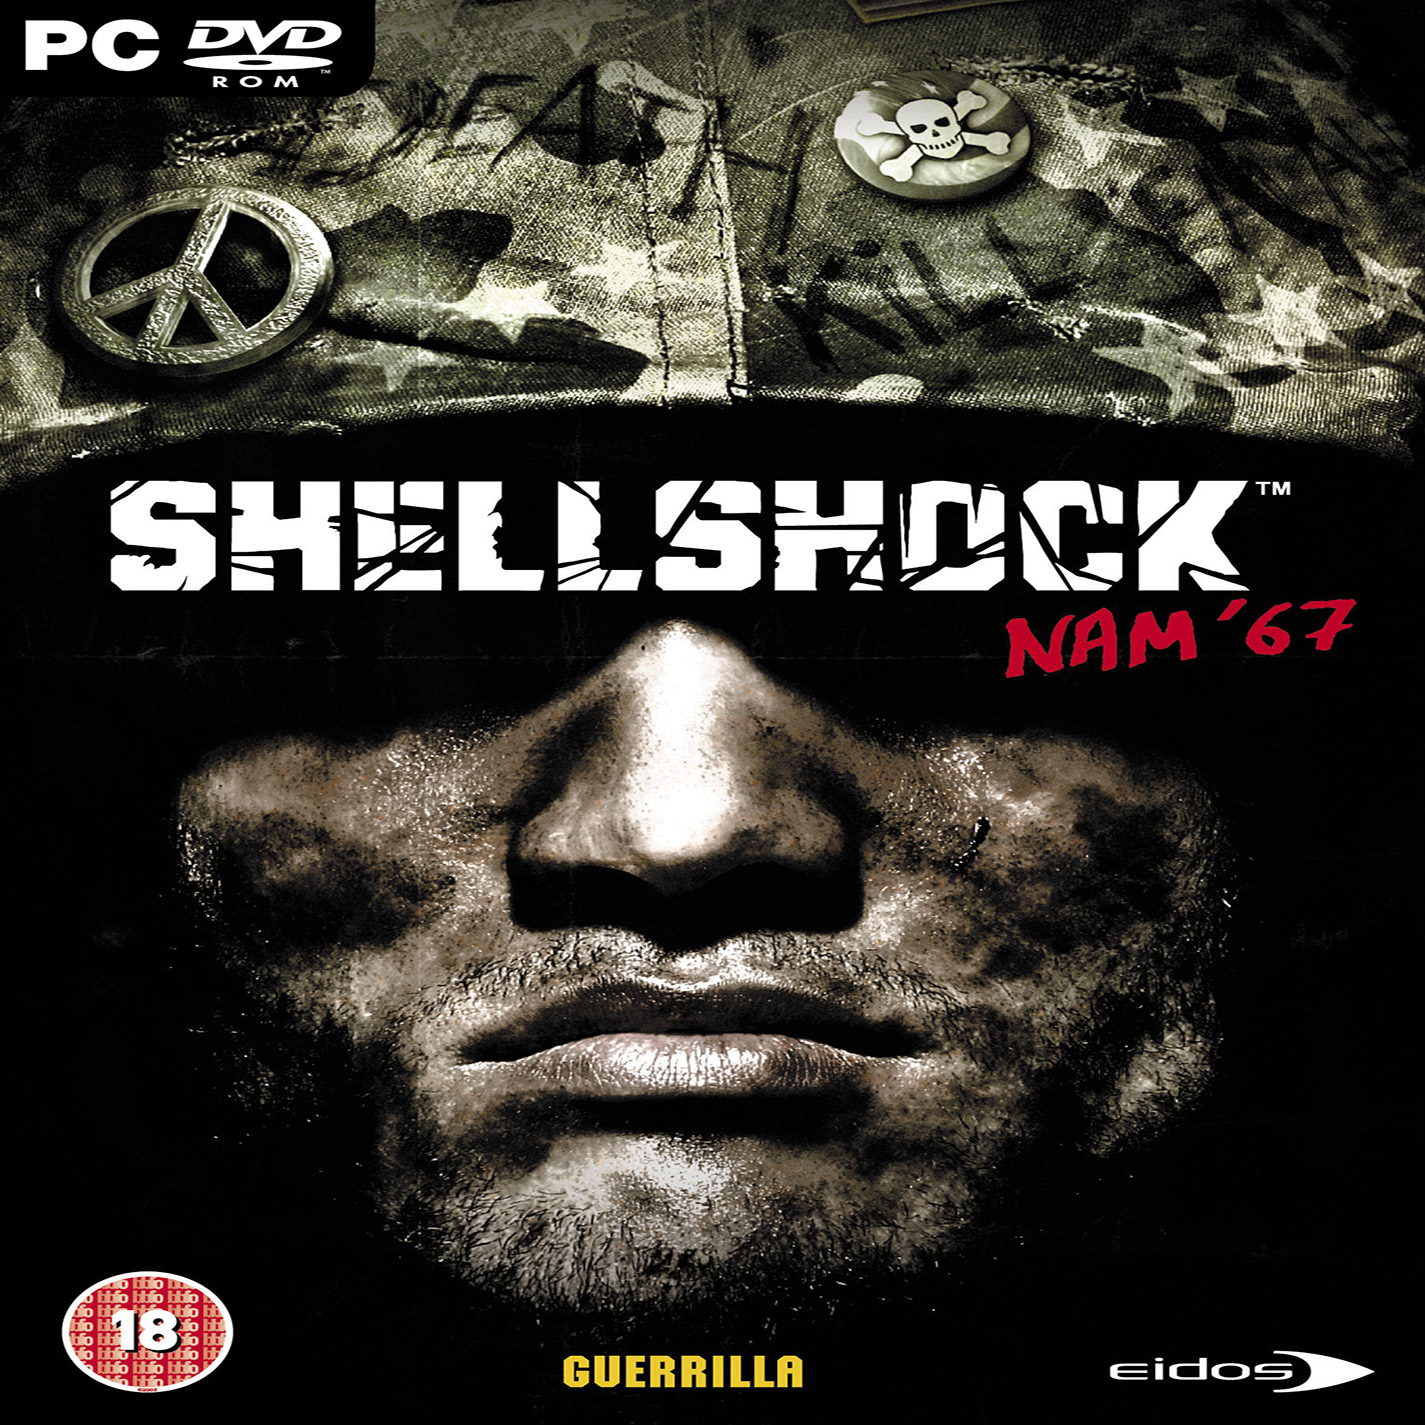 ShellShock: Nam '67 - pedn CD obal